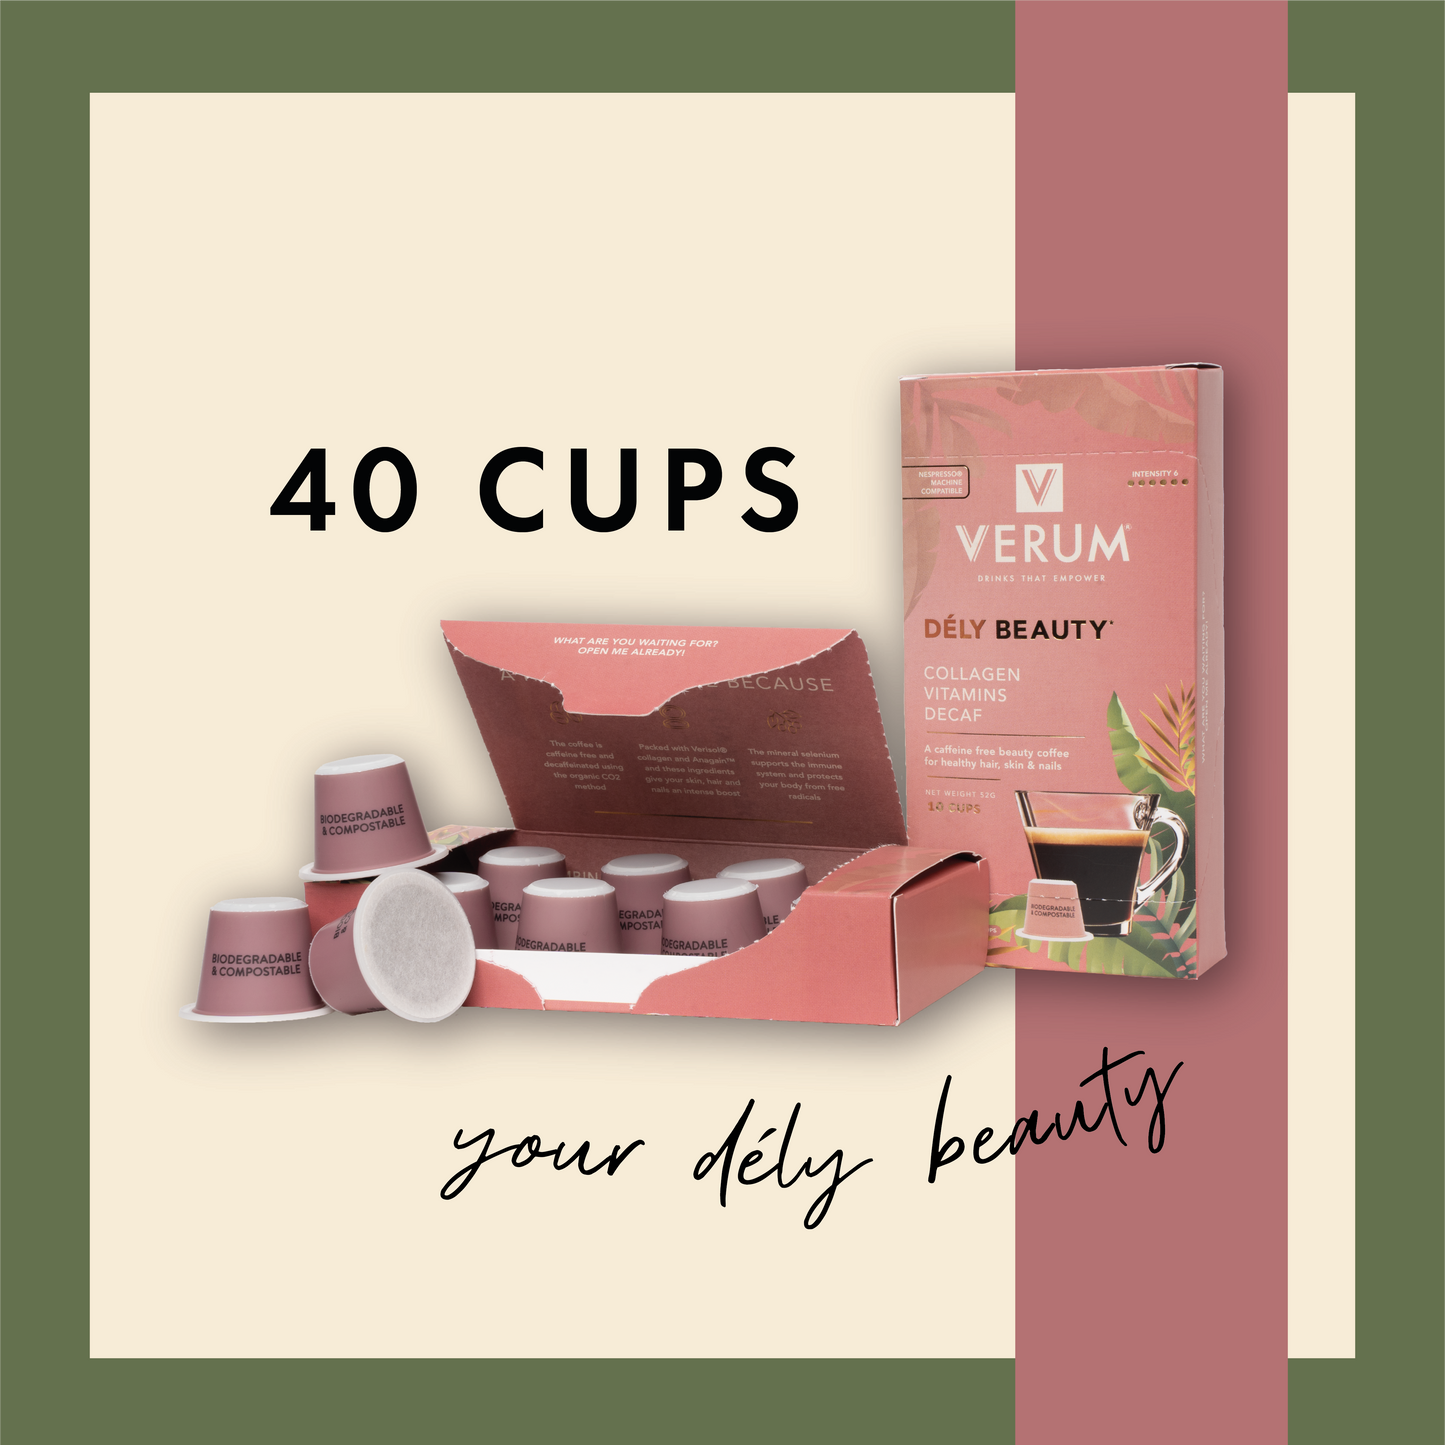 Verum Dély Beauty 40 cups